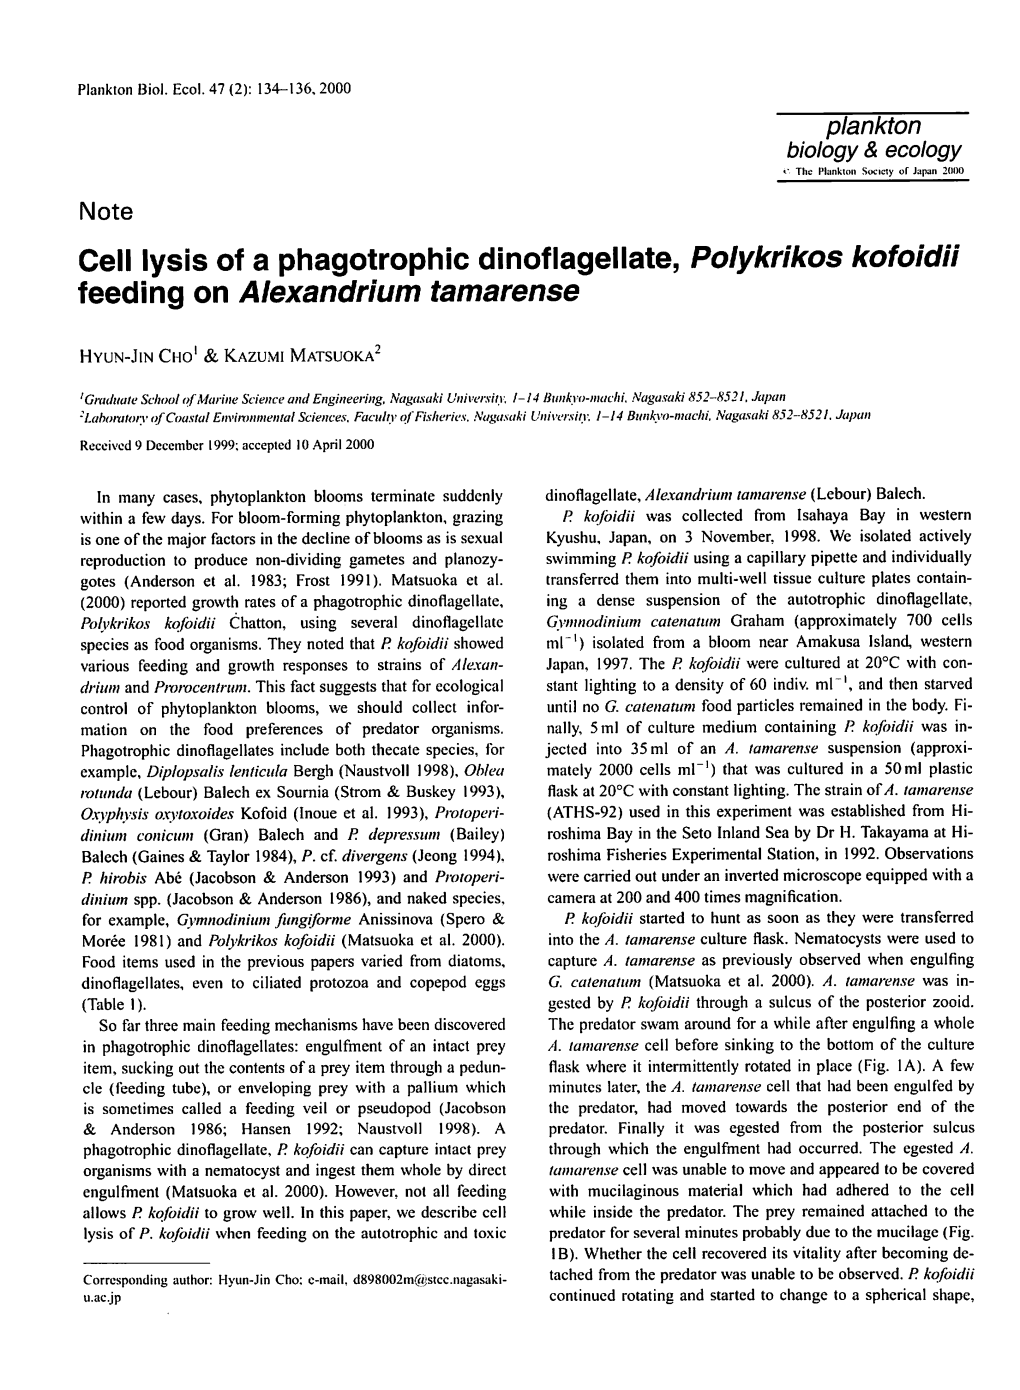 Cell Lysis of a Phagotrophic Dinoflagellate, Polykrikos Kofoidii Feeding on Alexandrium Tamarense